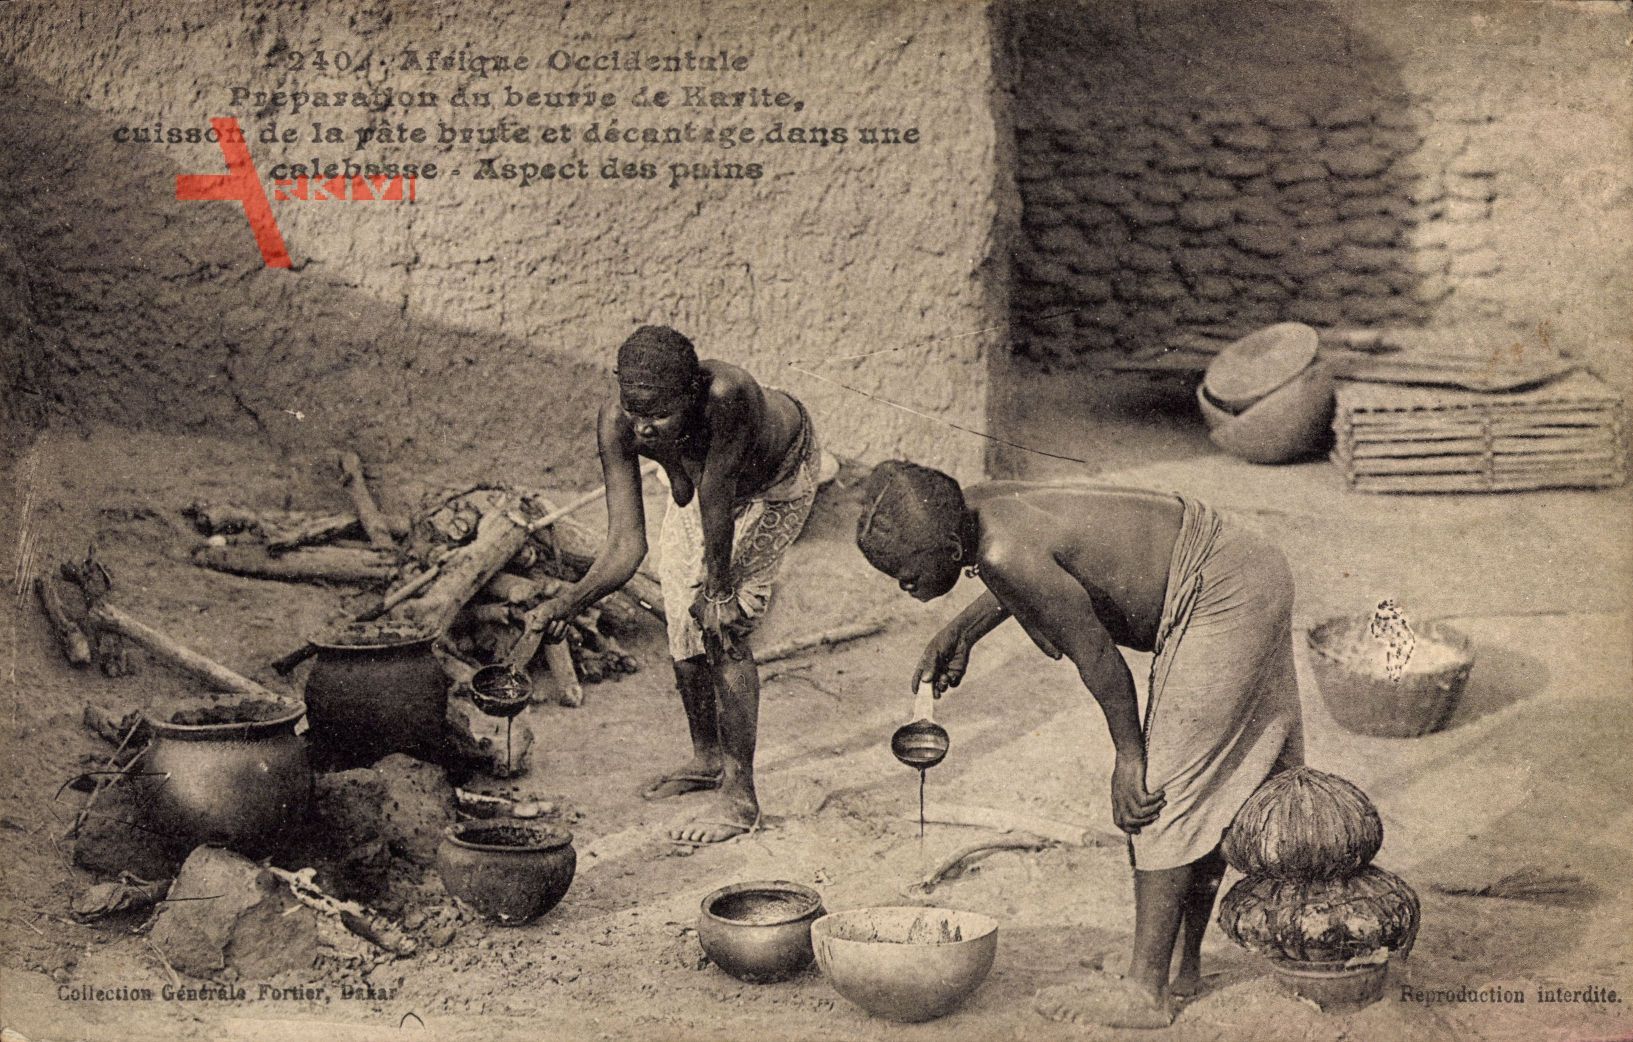 Afrique Occidentale, Préparation du beurre de Karite, Butterherstellung